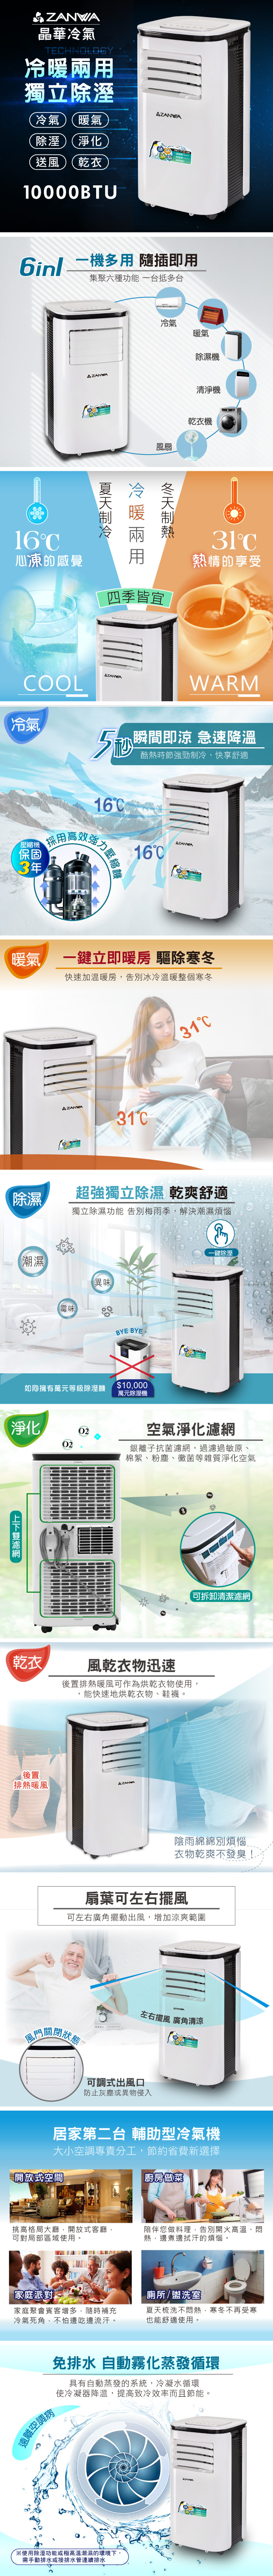 【ZANWA晶華】多功能清淨除濕冷暖型移動式空調 ZW-125CH